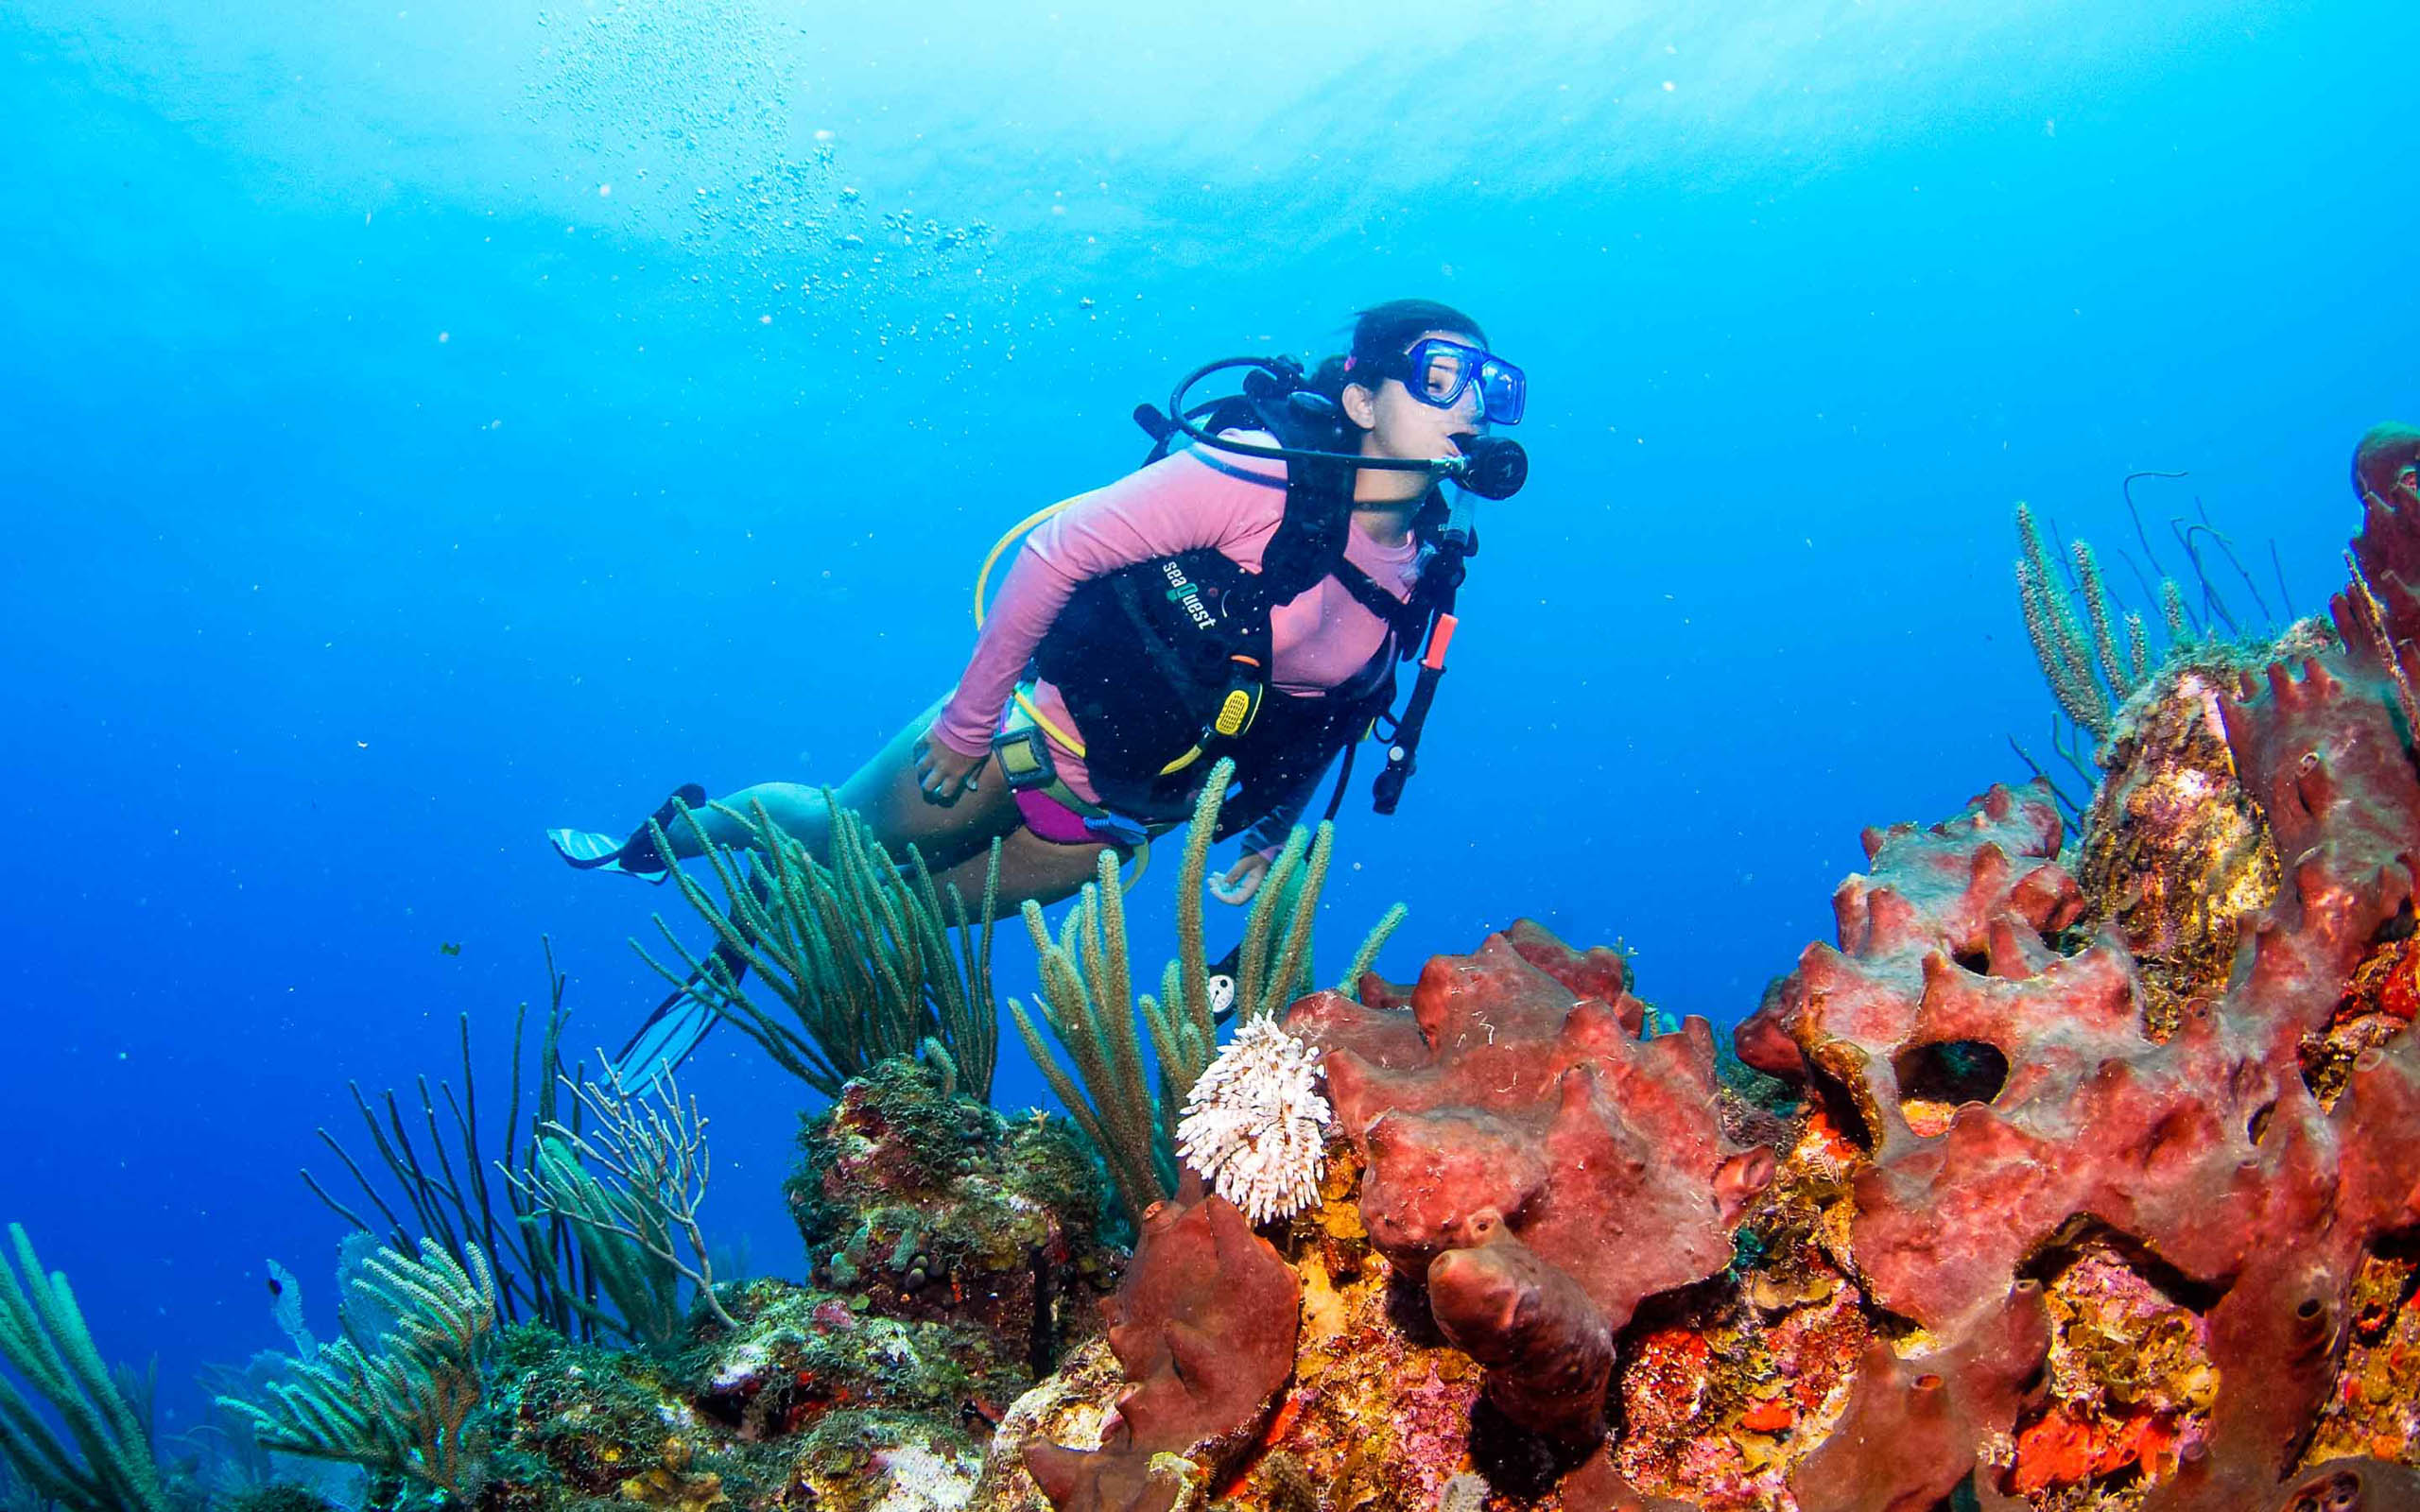 A woman scuba diving near coral reefs.